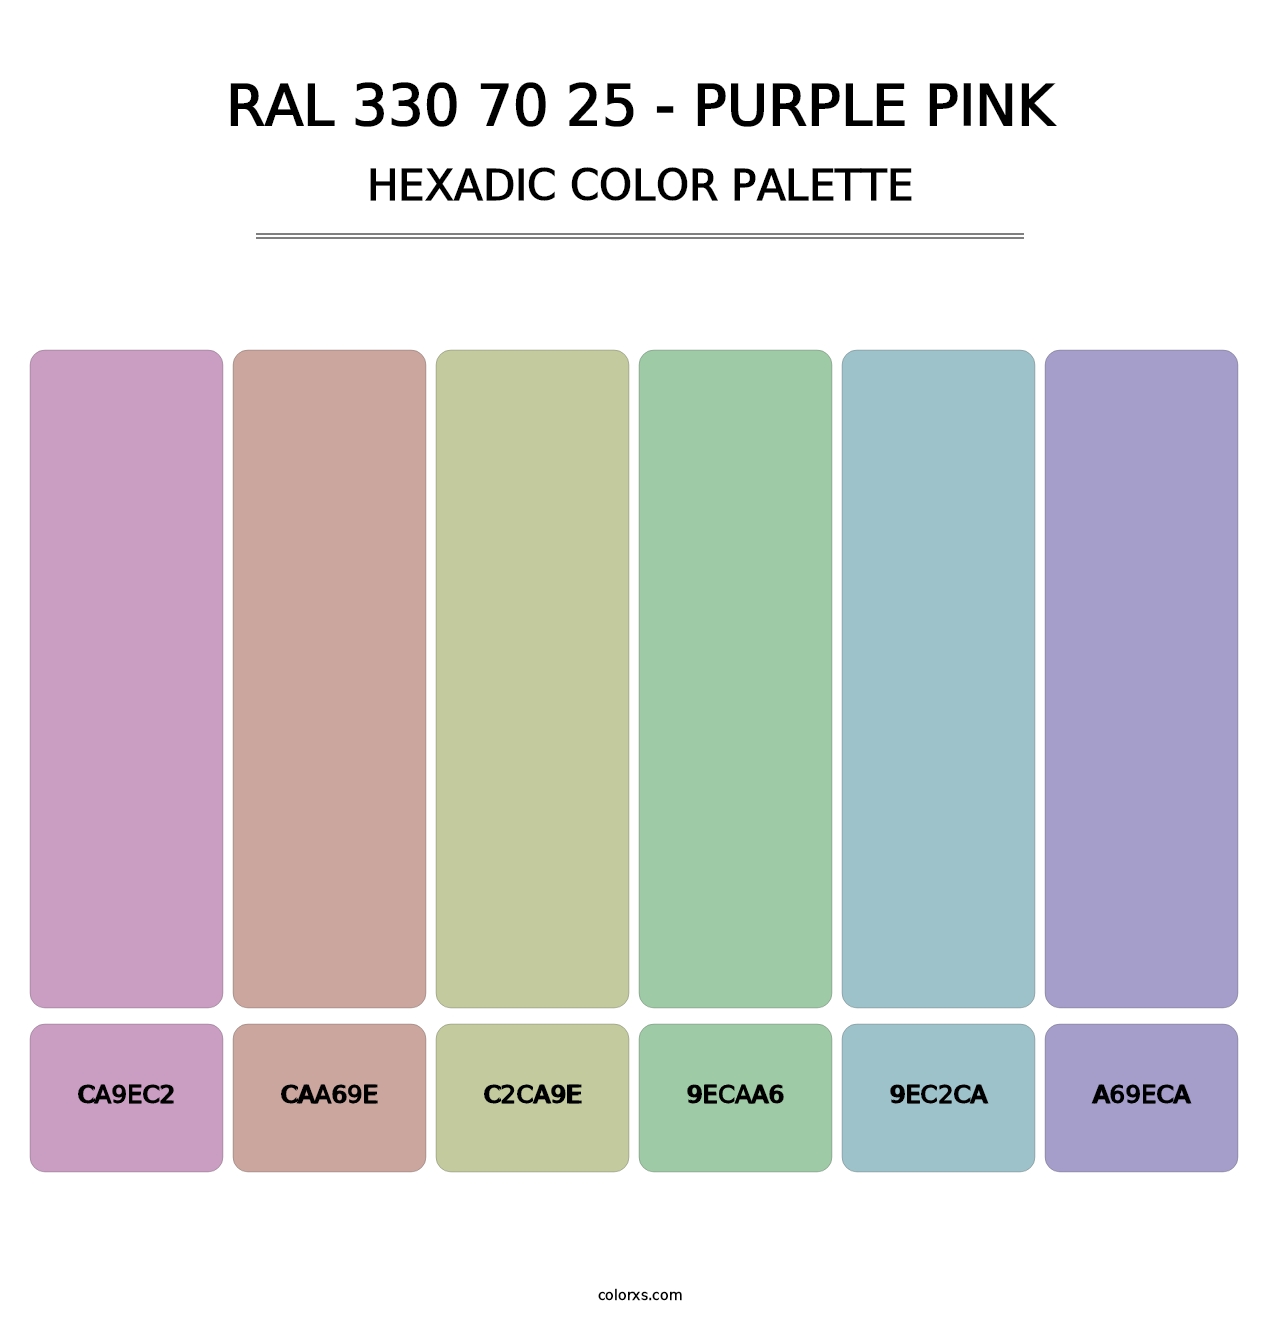 RAL 330 70 25 - Purple Pink - Hexadic Color Palette